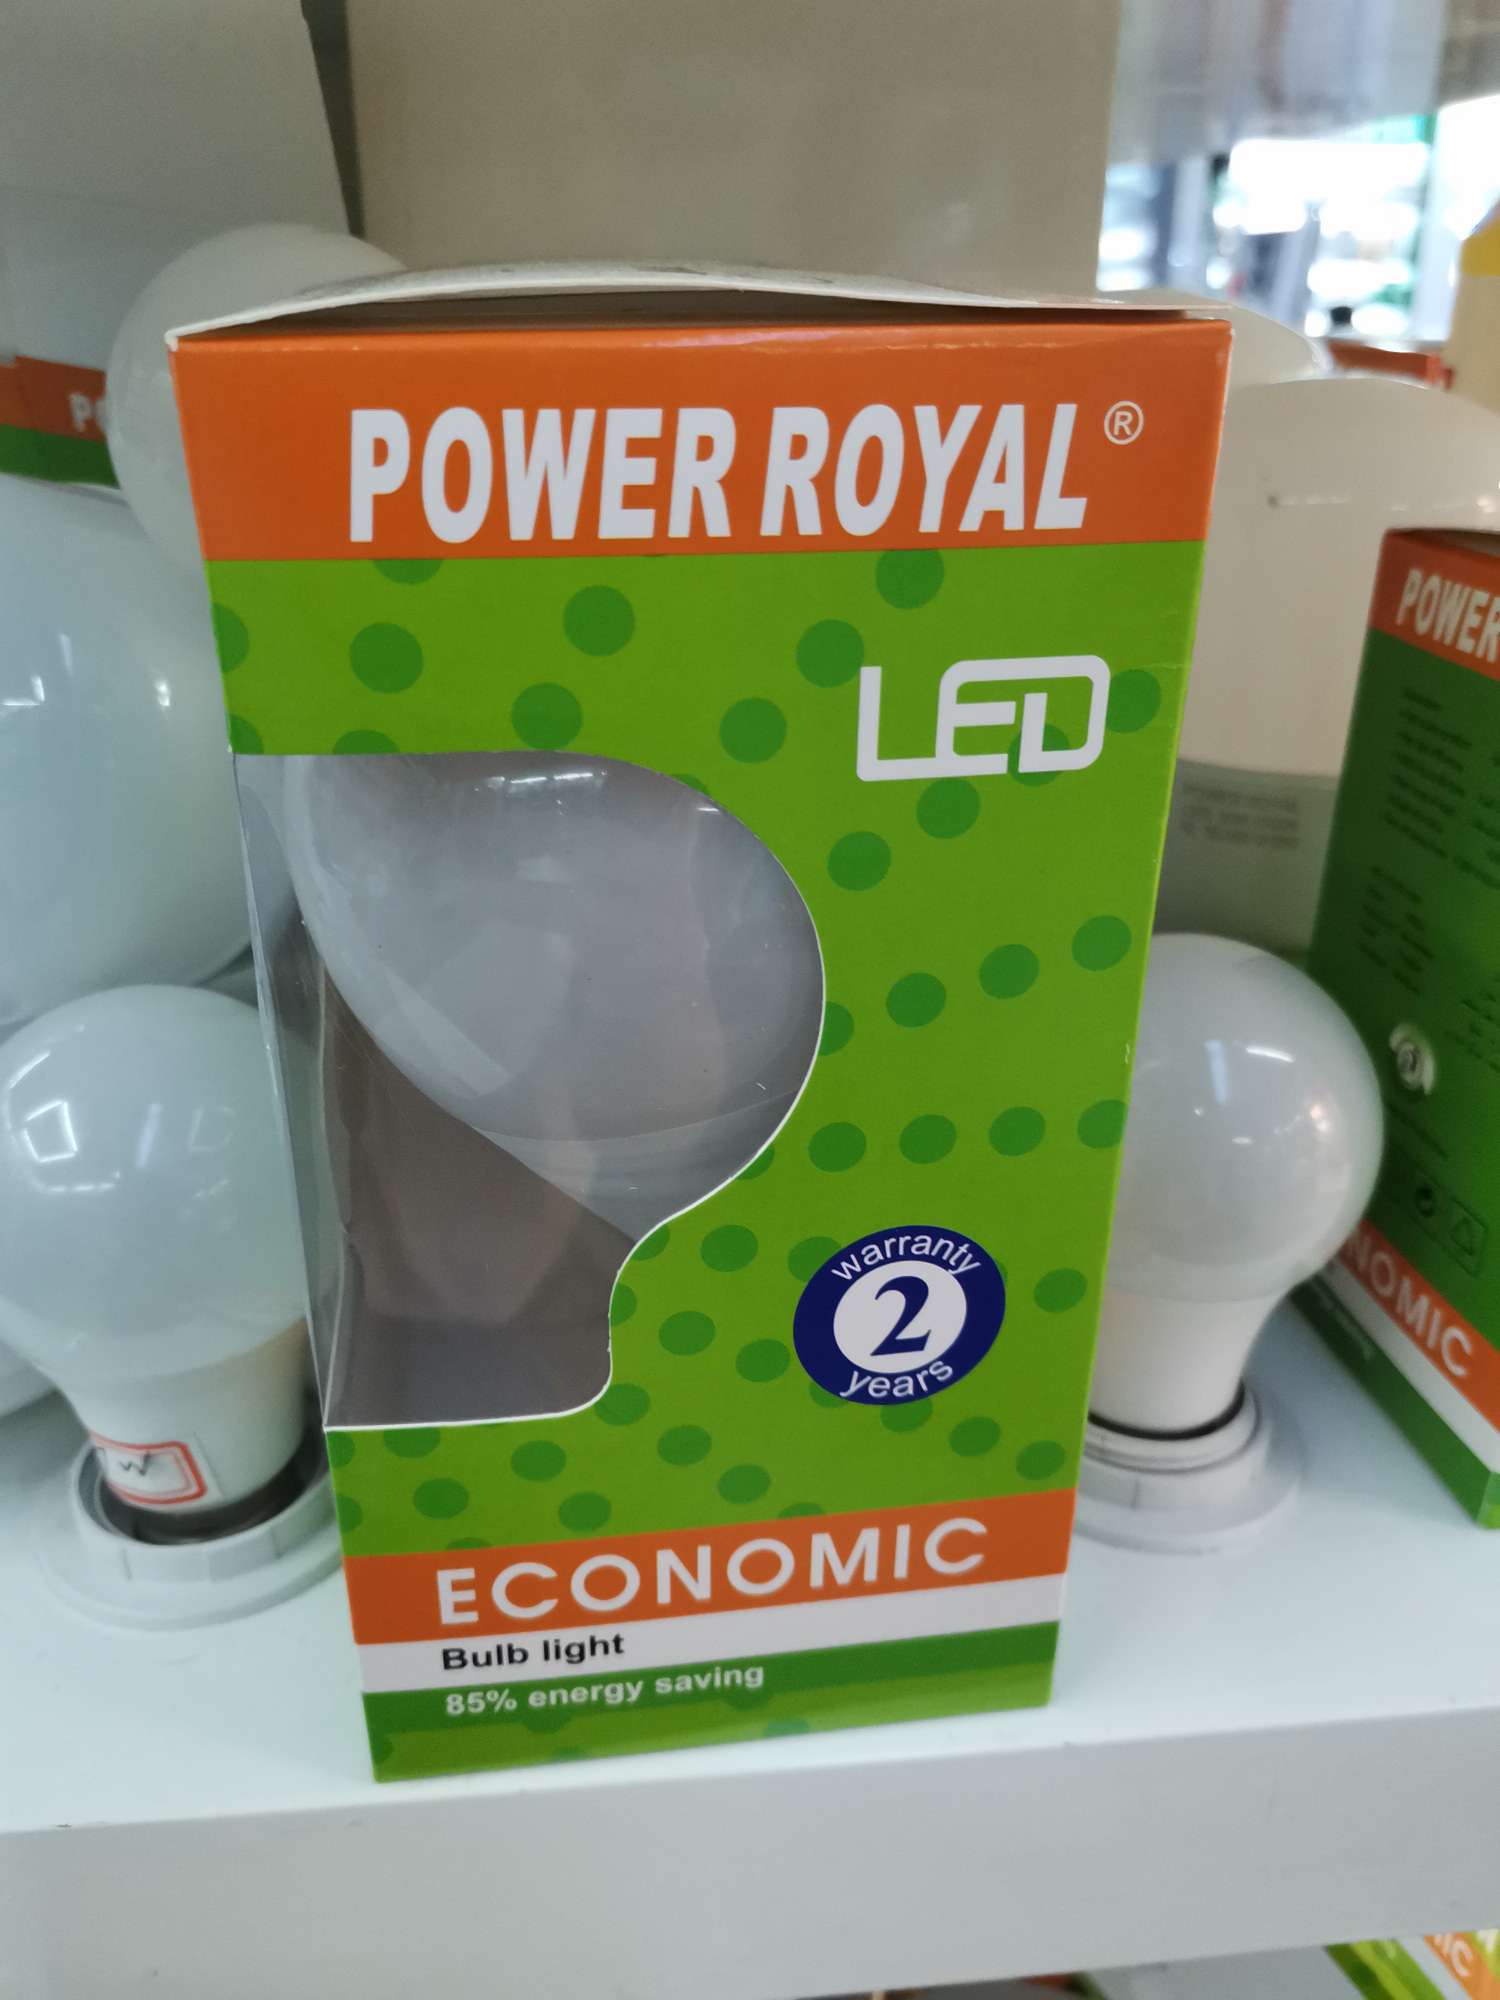 POWER ROYAL LED灯塑包铝5W/7W/9W